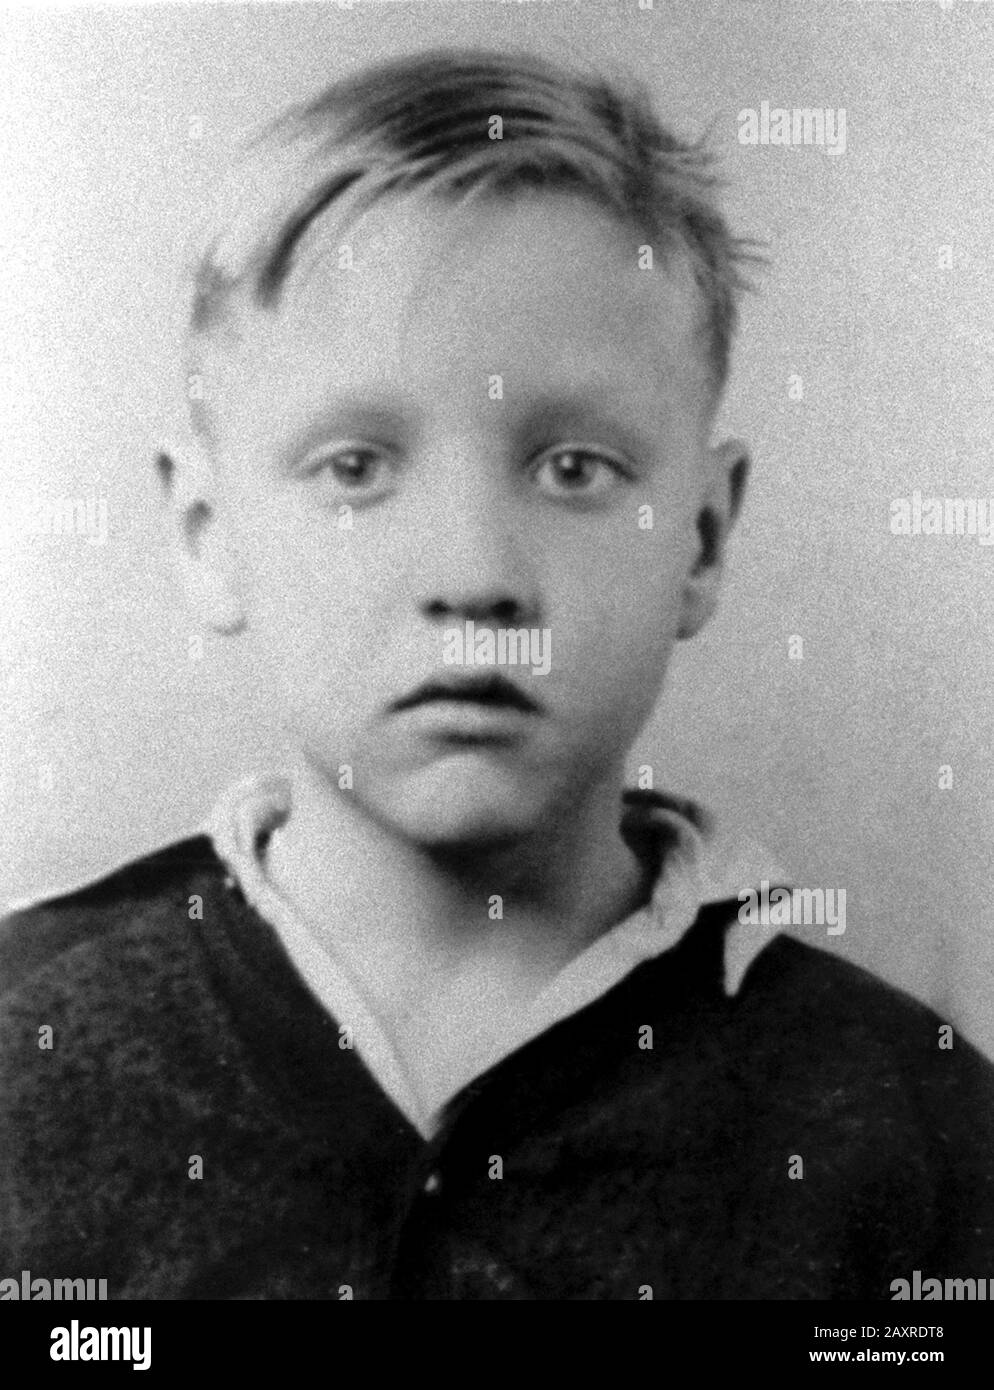 1945 Ca, Tupelo, USA: Der gefeiertste Rock'n Roll-Sänger ELVIS PRESLEY (* 1935; † 1977), als er ein kleiner Junge war. Unentzifizierter Fotograf. - MUSIK - MUSICA - ROCK - GESCHICHTE - FOTO STORICHE - als Kind - Kinder - Berühmtheiten Berühmtheit - celebrità personaggi famosi da bambini - Bambino - Kinder - infanzia - Kindheit -- ARCHIVIO GBB Stockfoto